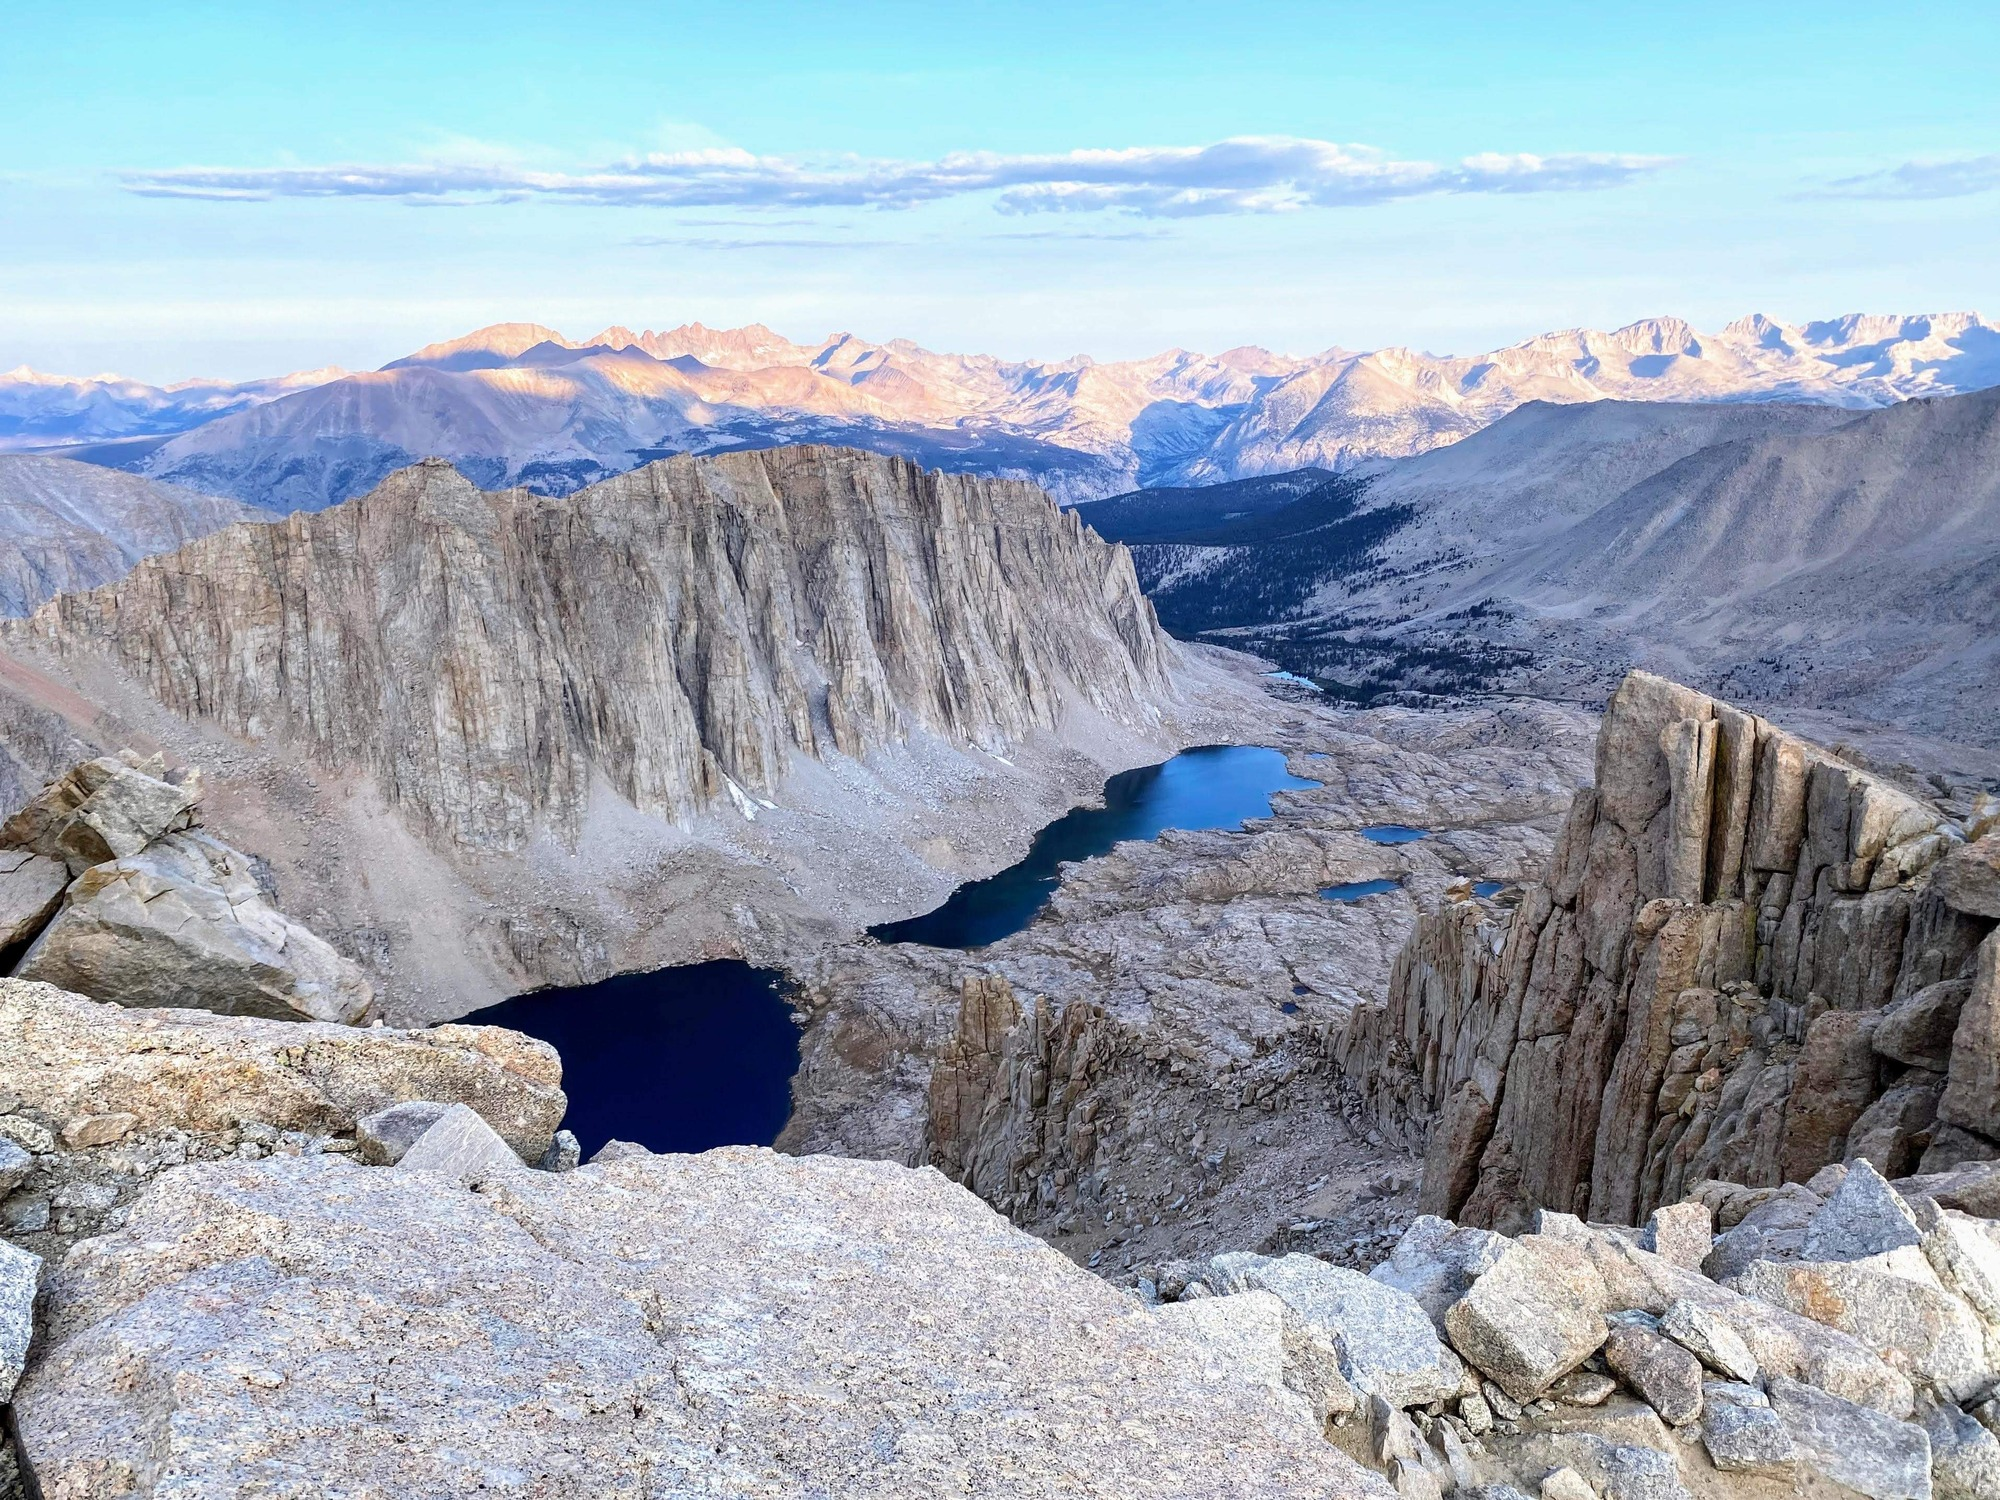 High Sierra mountains and lakes - High Sierra mountains and lakes on Mount Whitney Trail - Elijah Nevarez